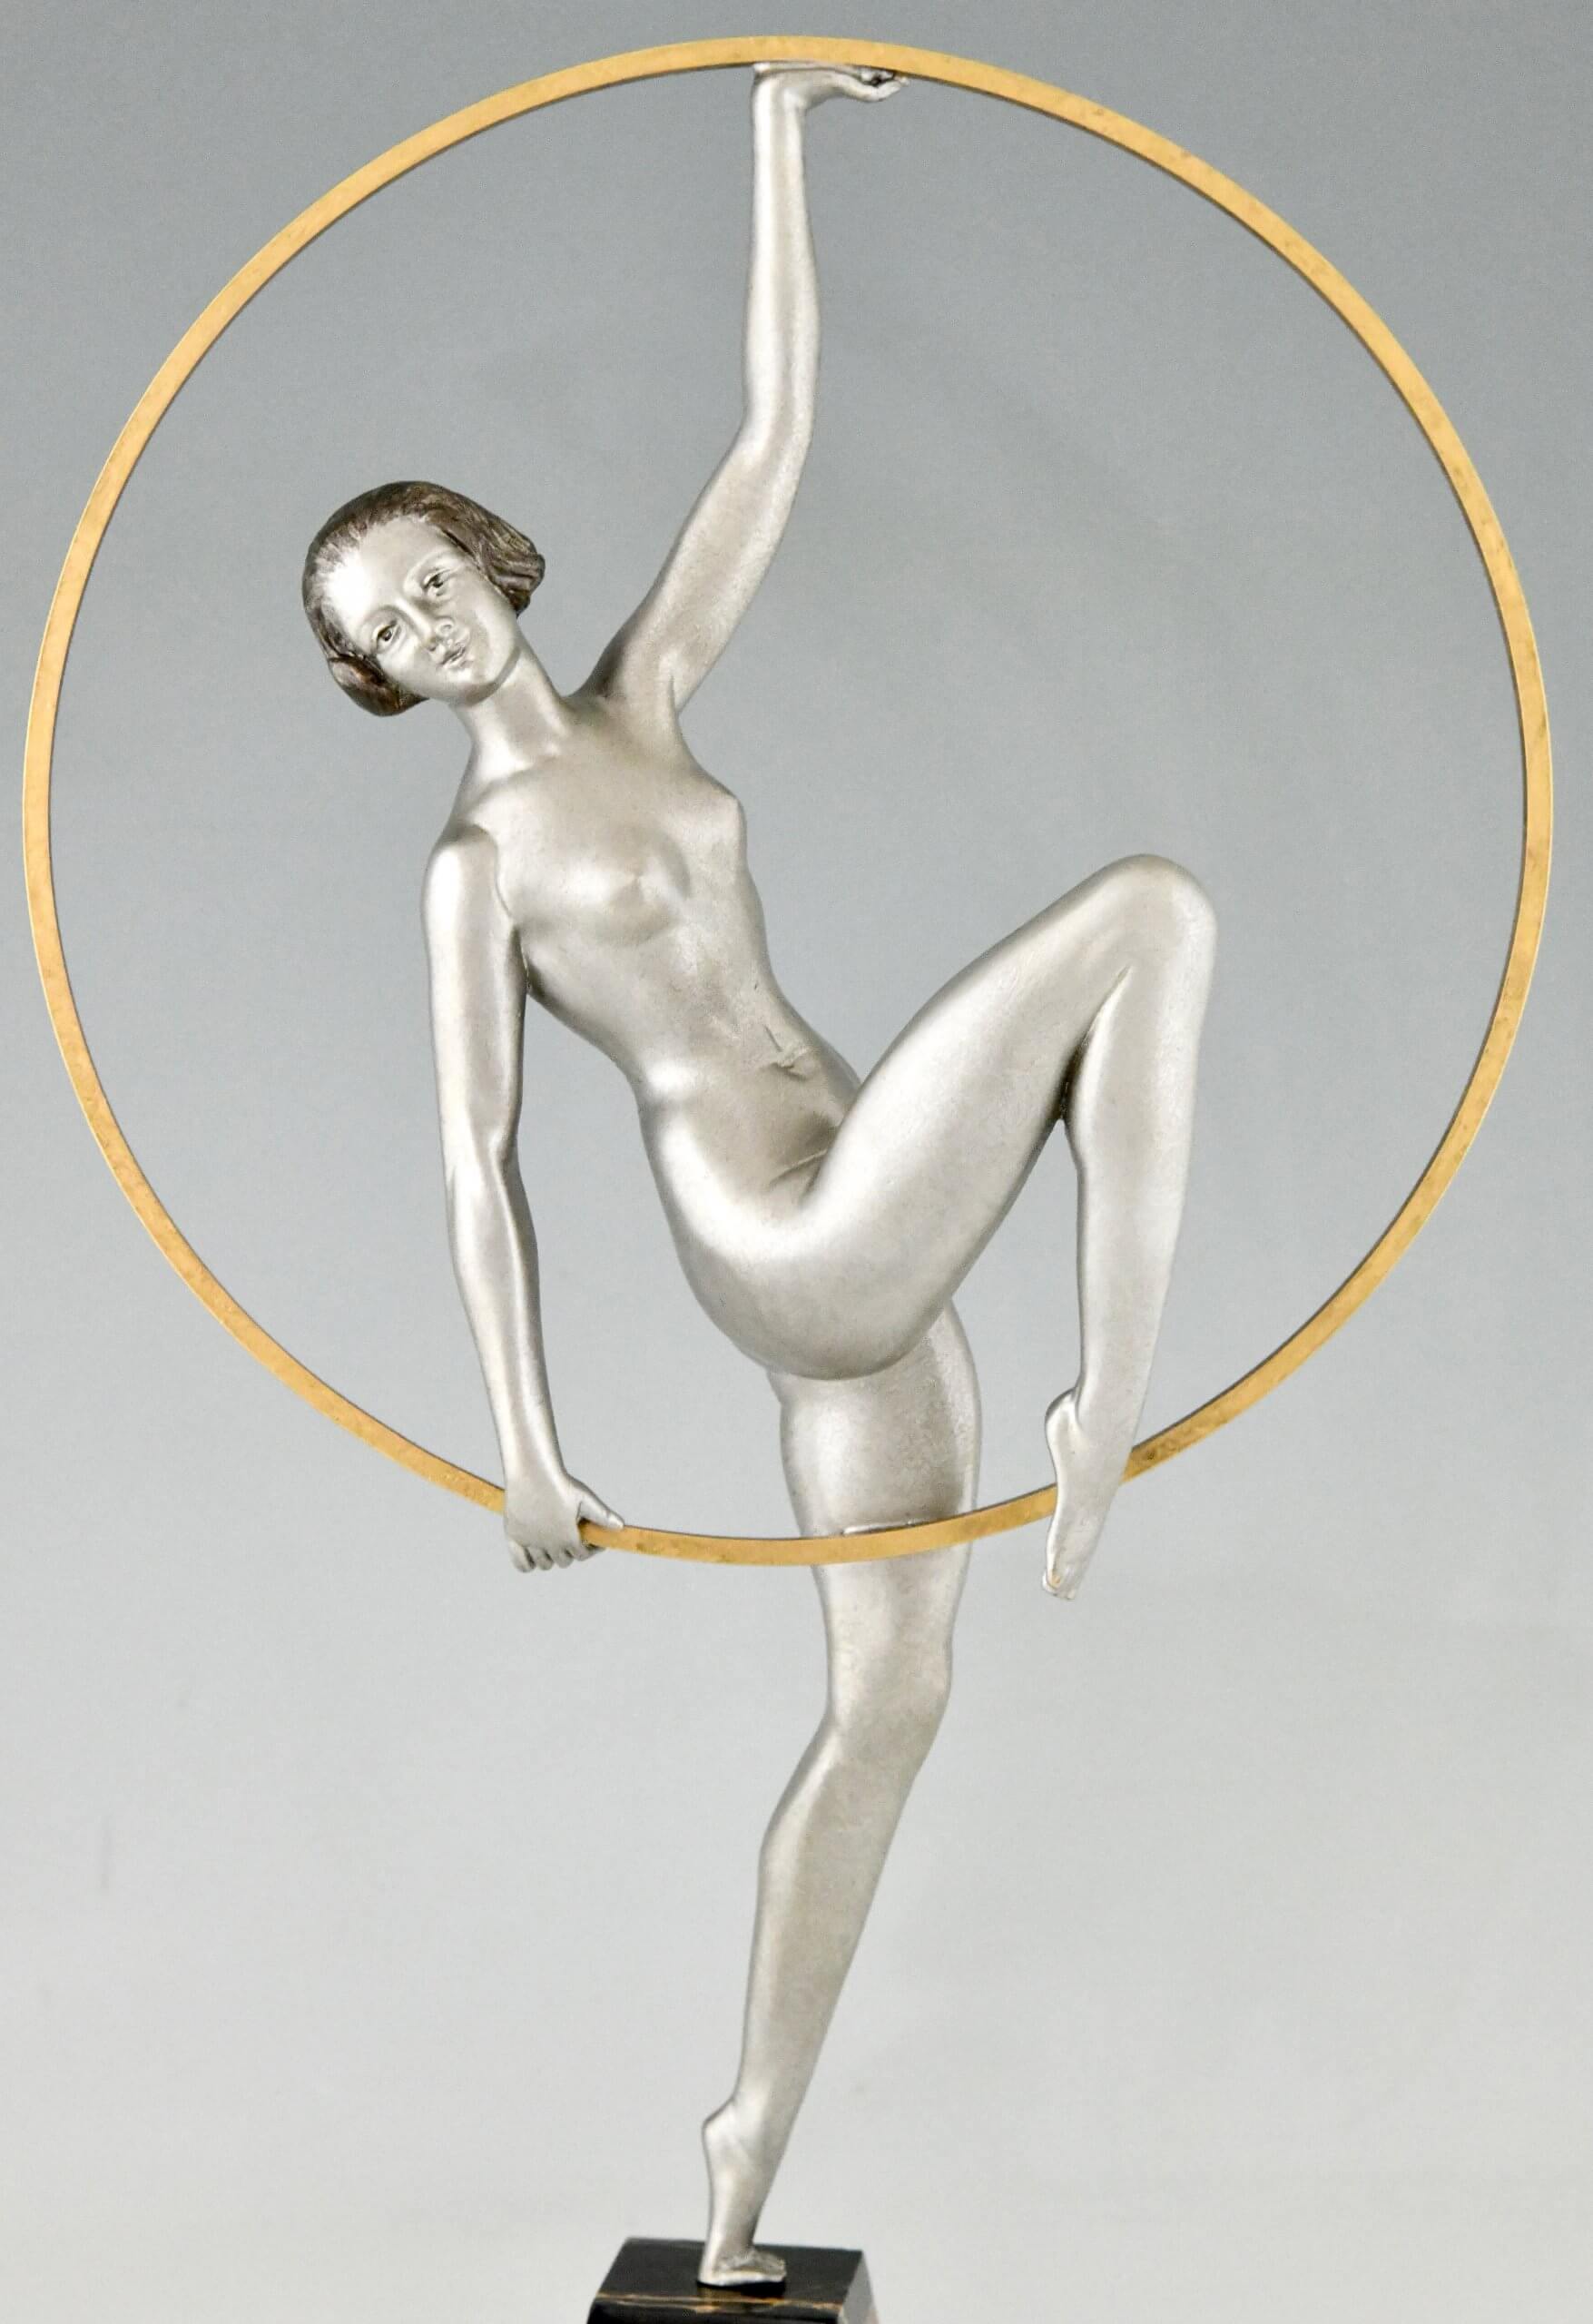 Art Deco sculpture hoop dancer.